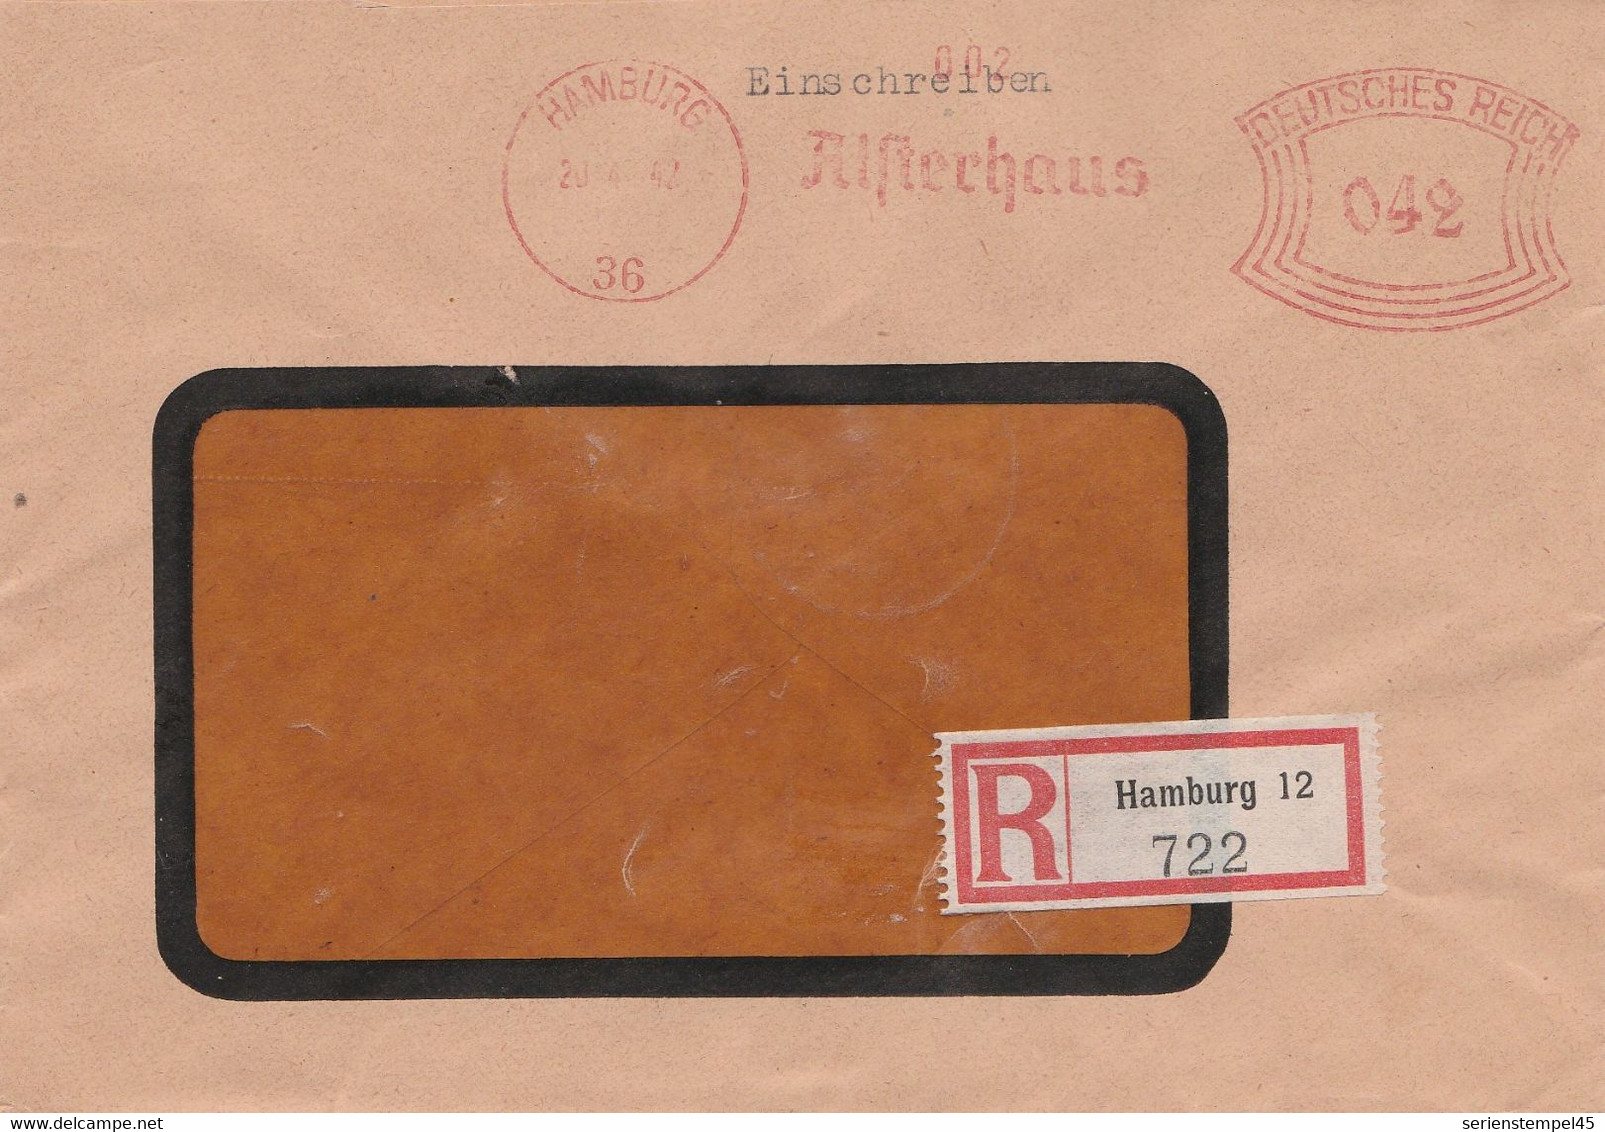 Deutsches Reich Einschreibe Brief Mit Freistempel Hamburg 36 1942 Alsterhaus - Marcofilia - EMA ( Maquina De Huellas A Franquear)